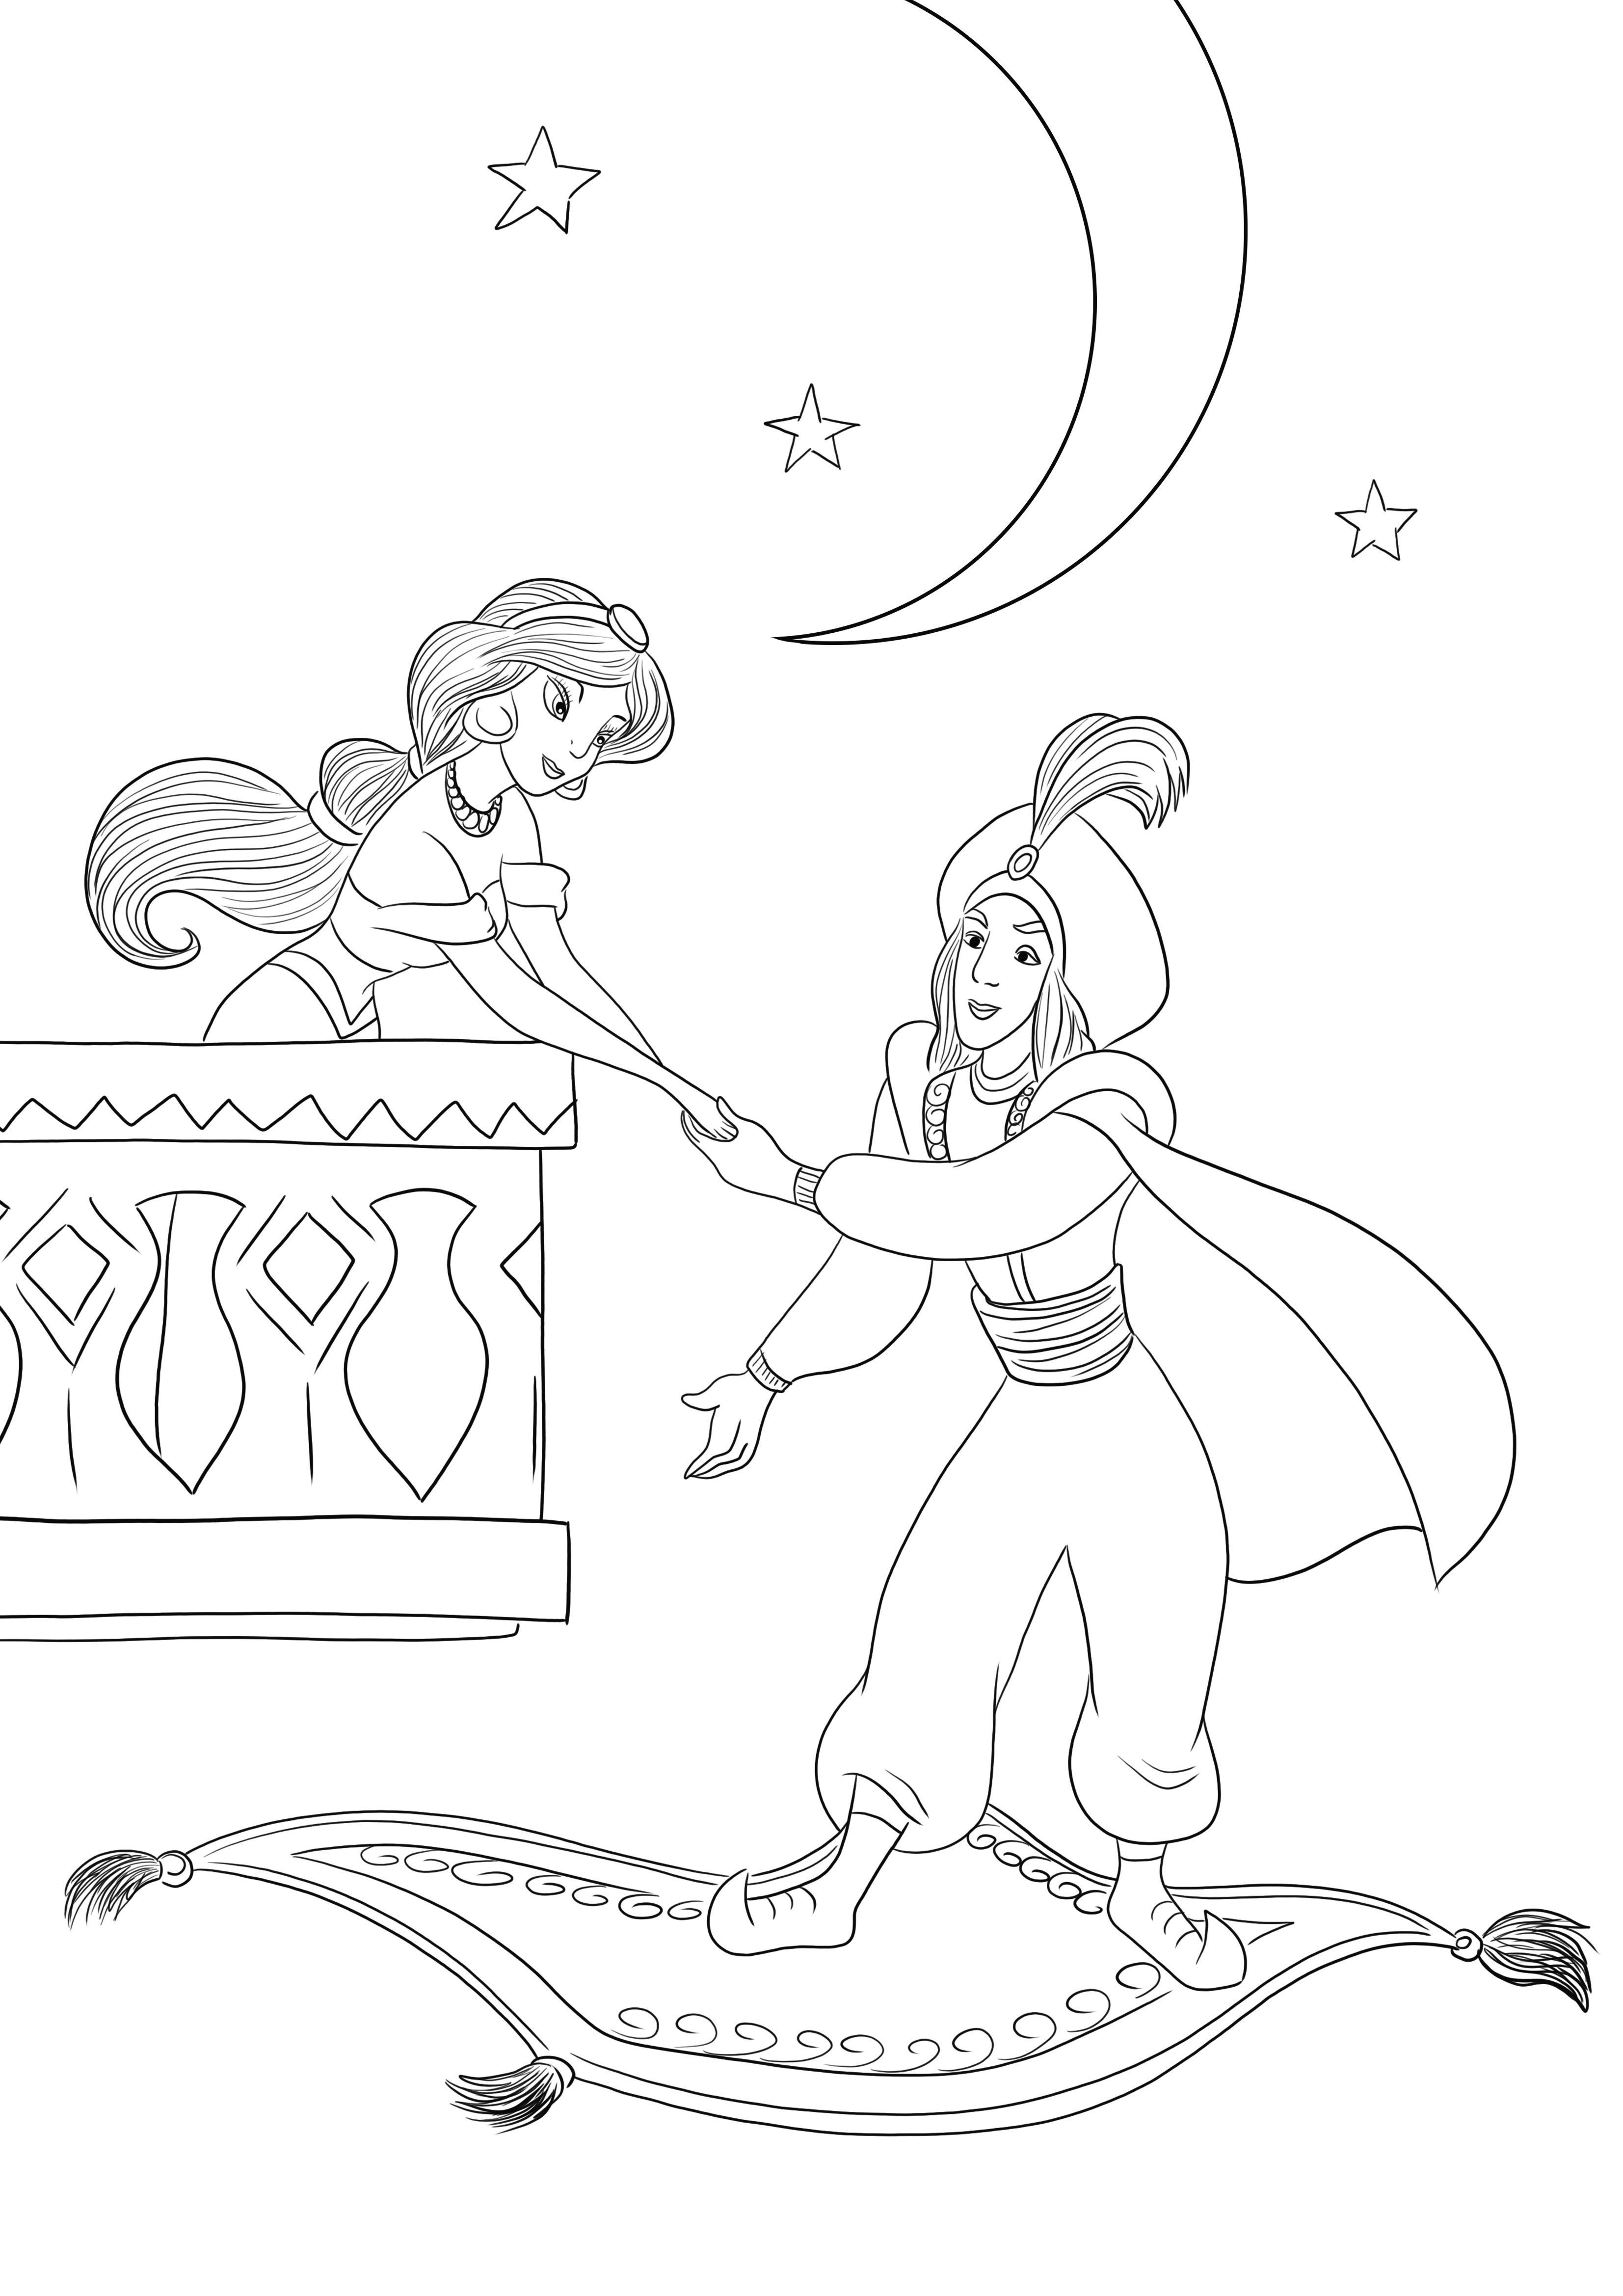 Un'immagine da colorare gratuita del principe Ali che incontra Jasmine da scaricare o stampare